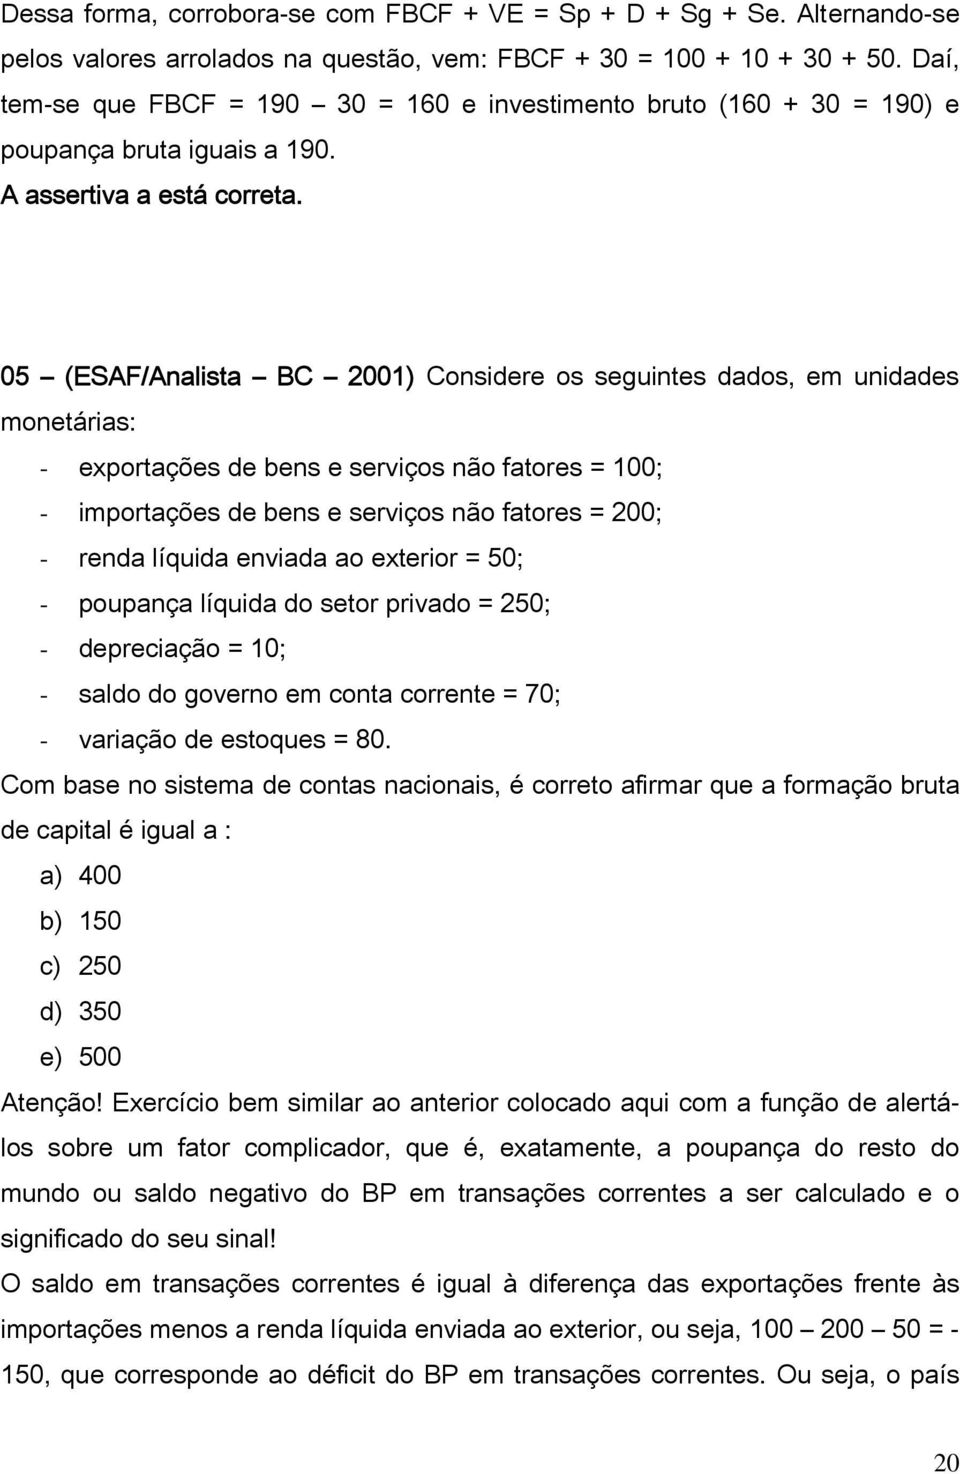 05 (ESAF/Analista BC 2001) Considere os seguintes dados, em unidades monetárias: - exportações de bens e serviços não fatores = 100; - importações de bens e serviços não fatores = 200; - renda